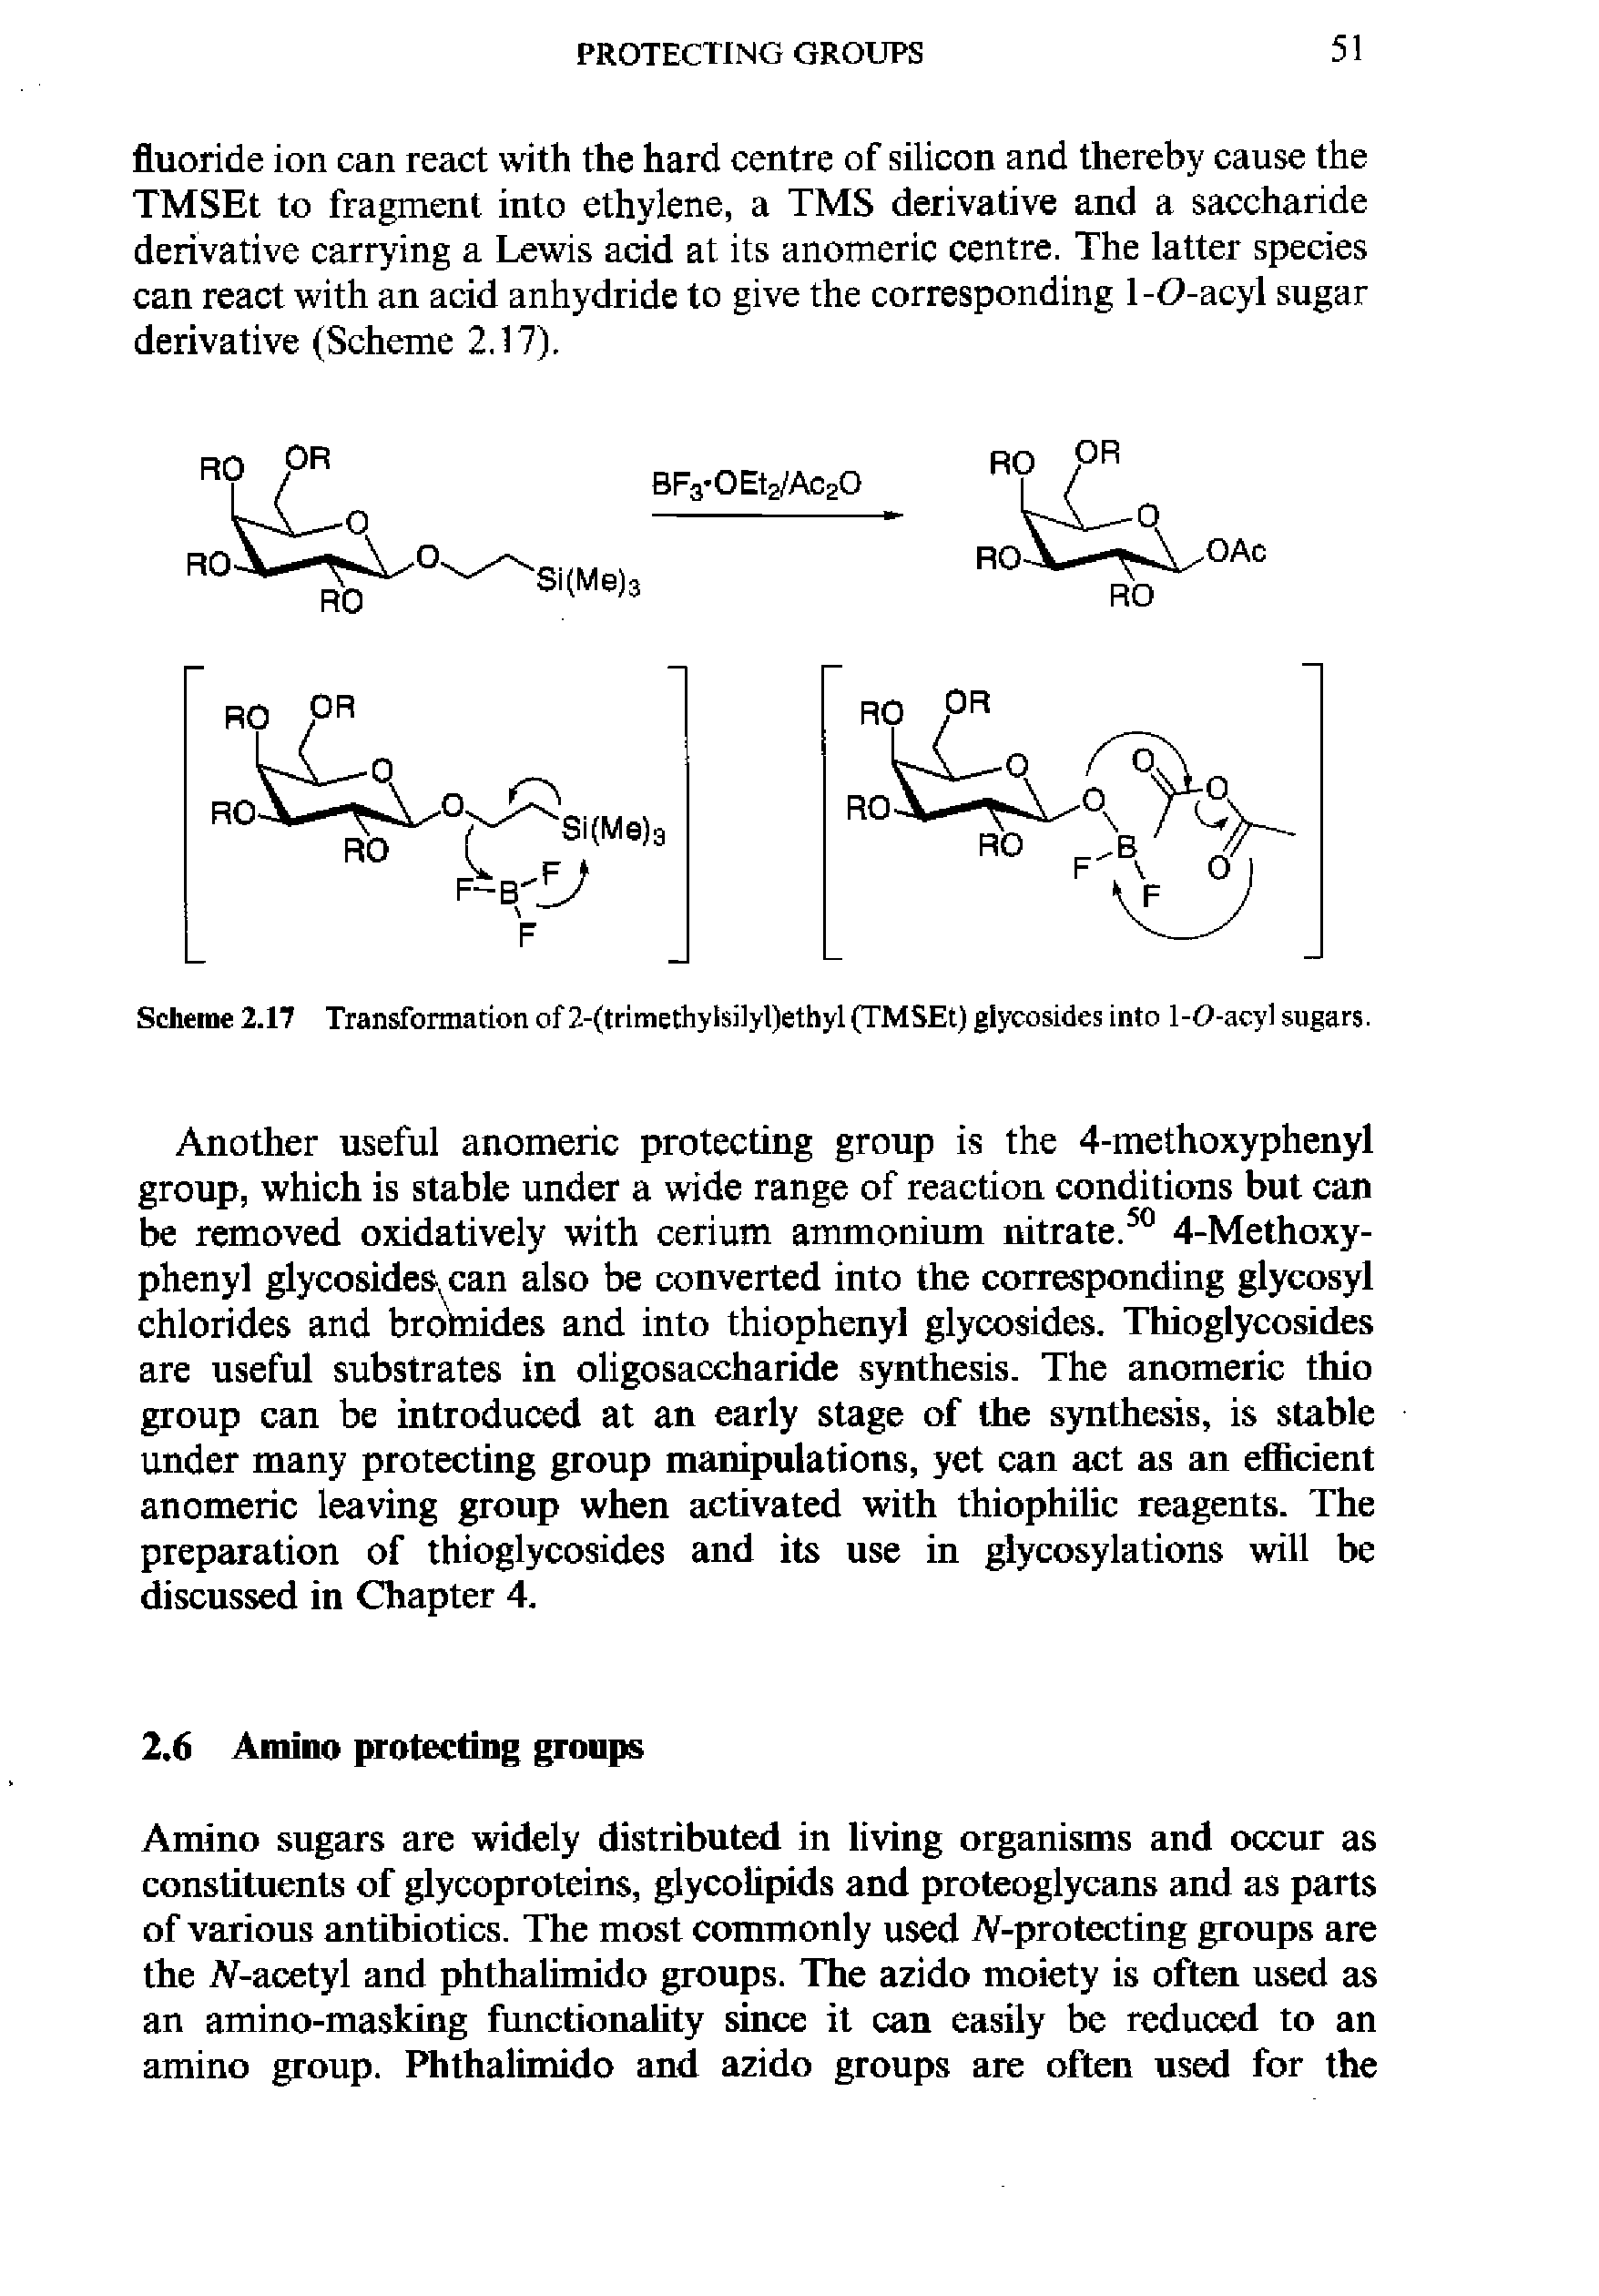 Scheme 2.17 Transformation of 2-(trimethyIsilyl)ethyl (TMSEt) glycosides into 1-O-acyl sugars.